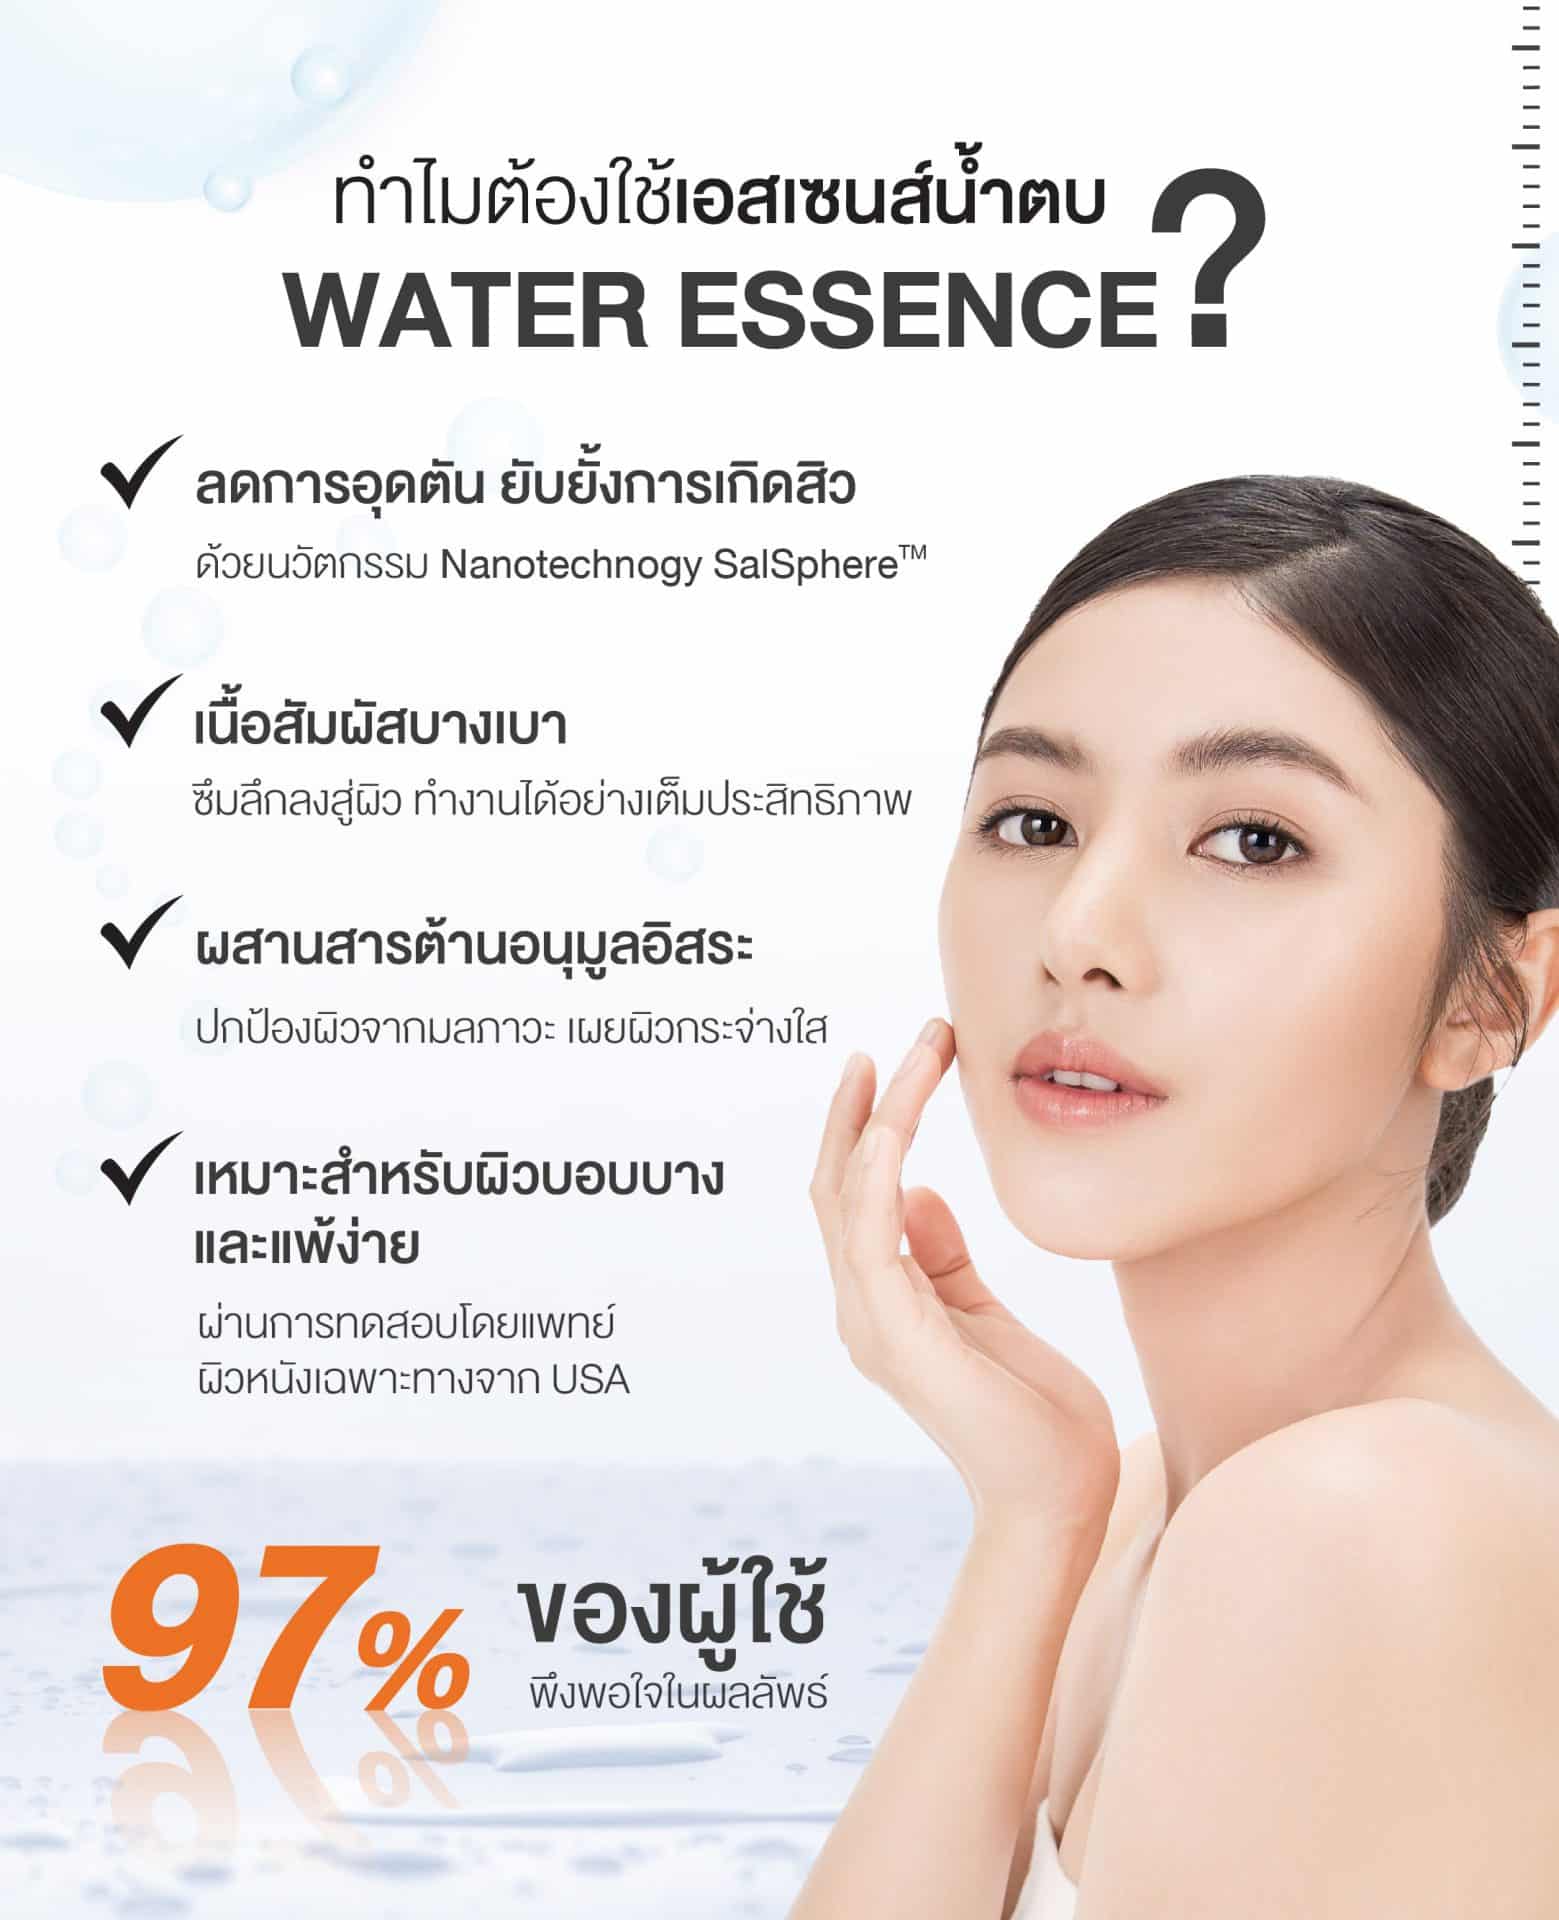 (ซื้อ 1 ฟรี 2*) Skin-Enhancing Water Essence 140 ml. (รับฟรี Purifying Cleansing Water 150 ml. และ Ultra-Fine Hydration Pads)